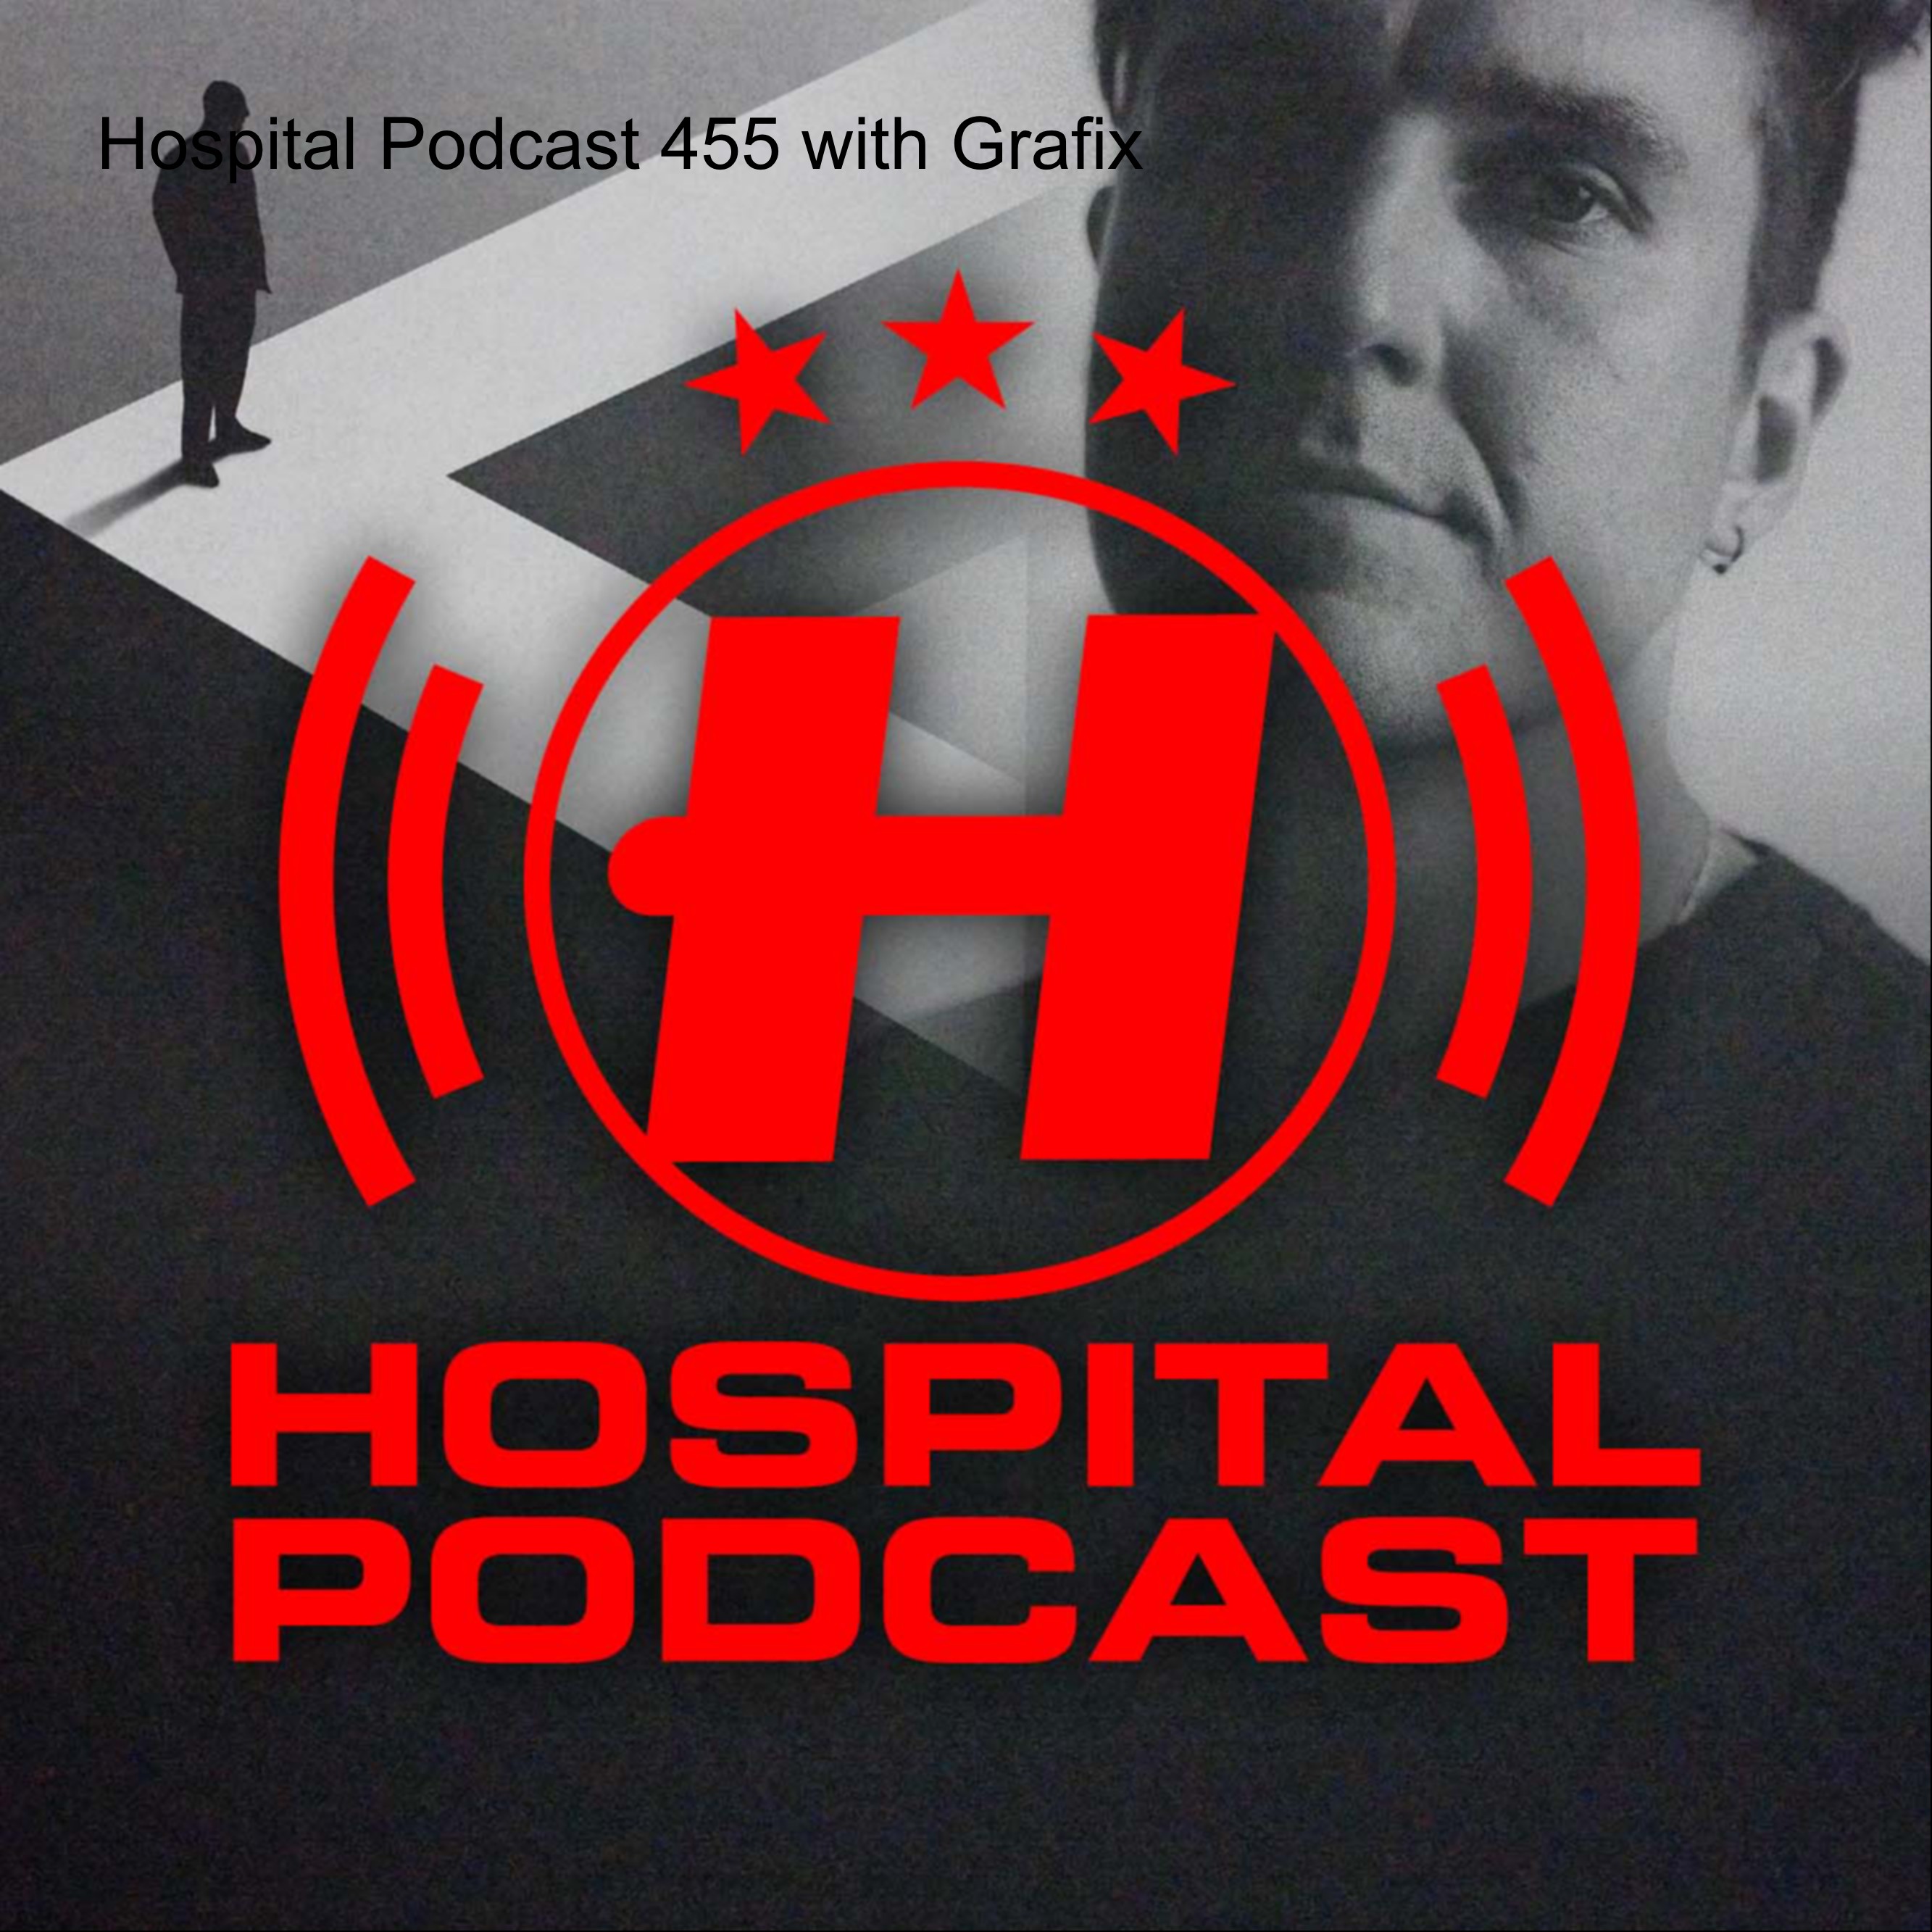 Hospital Podcast 455 with Grafix Artwork